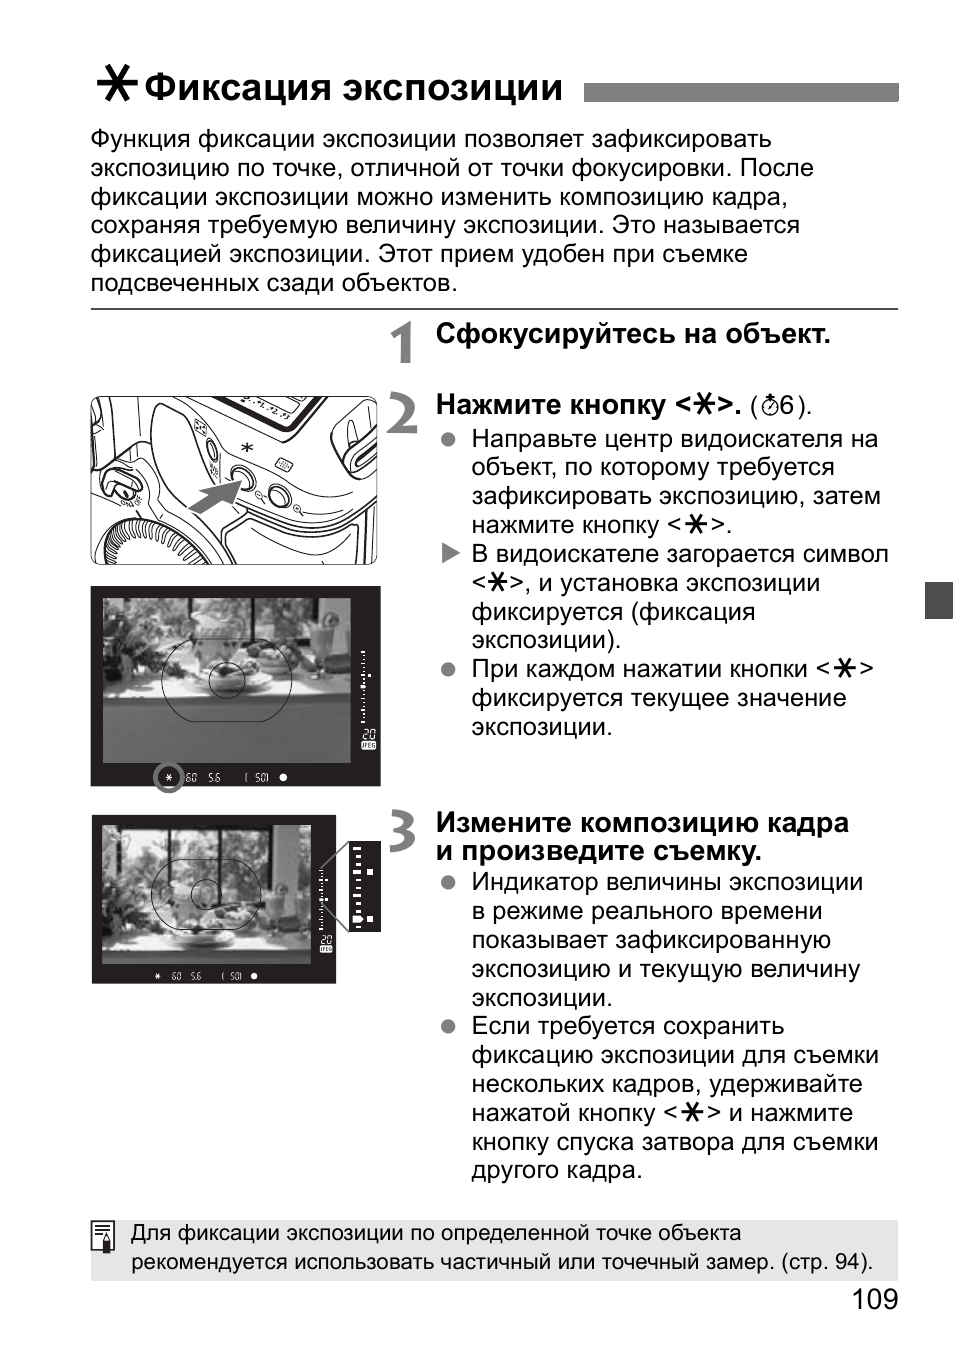 Фиксация экспозиции | Инструкция по эксплуатации Canon EOS 1D Mark II N | Страница 109 / 196